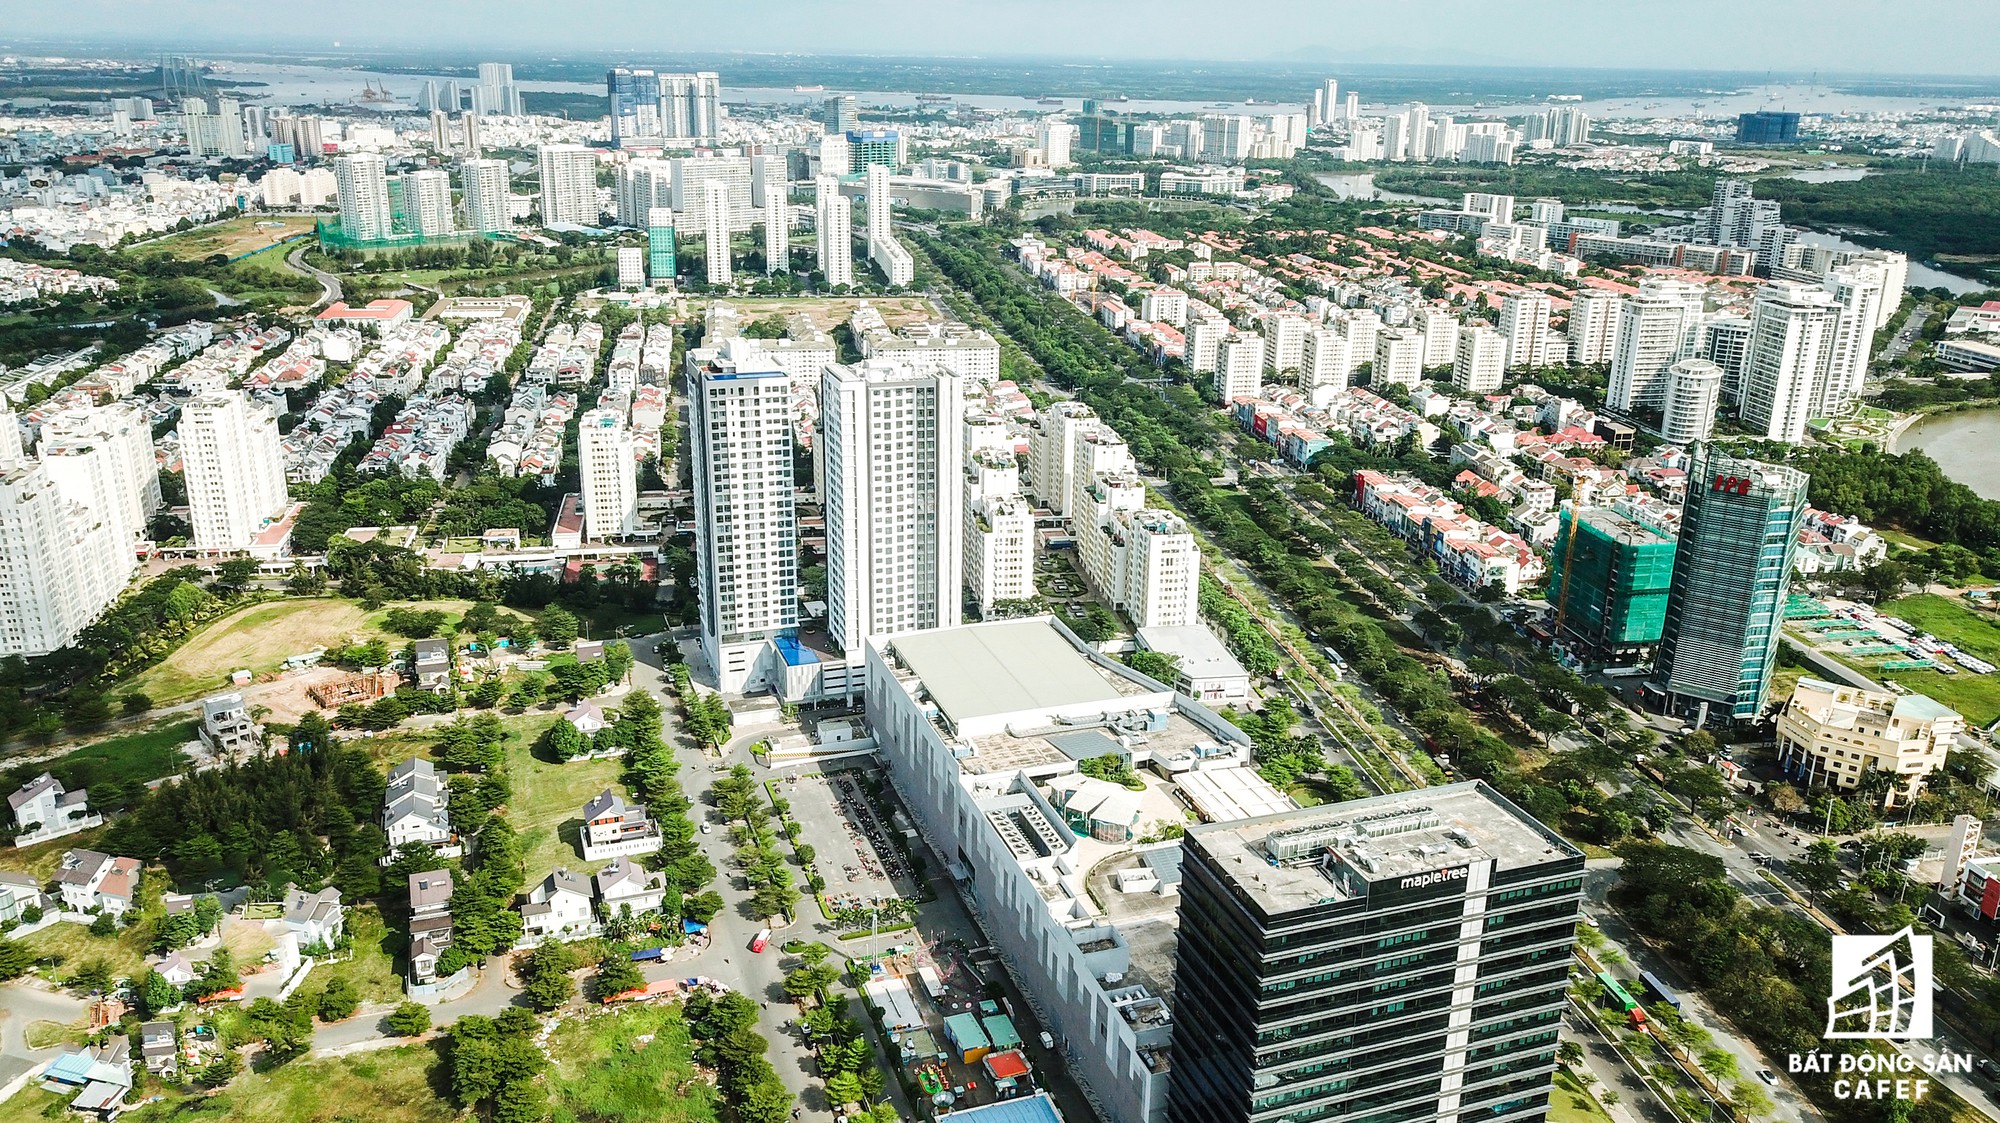 Toàn cảnh đại lộ tỷ đô đã tạo nên một thị trường bất động sản rất riêng cho khu Nam Sài Gòn - Ảnh 7.